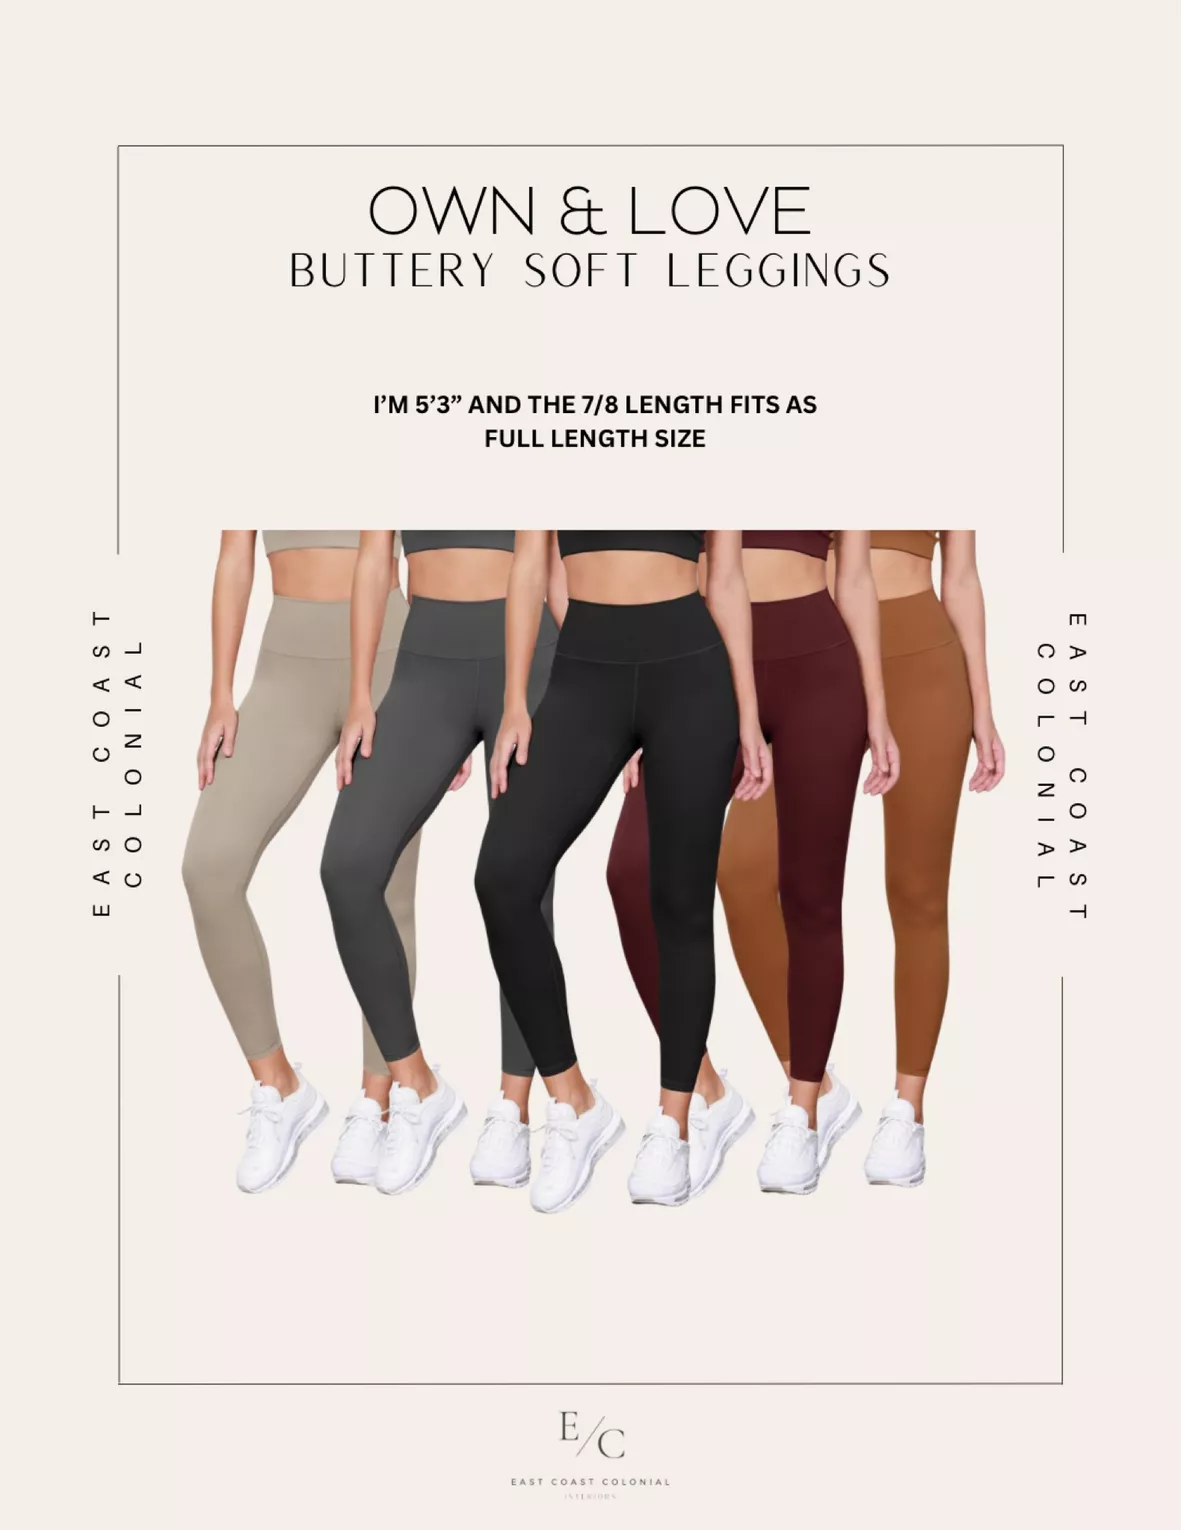 Women's Buttery Soft High Waisted Yoga Pants Full-Length Leggings 